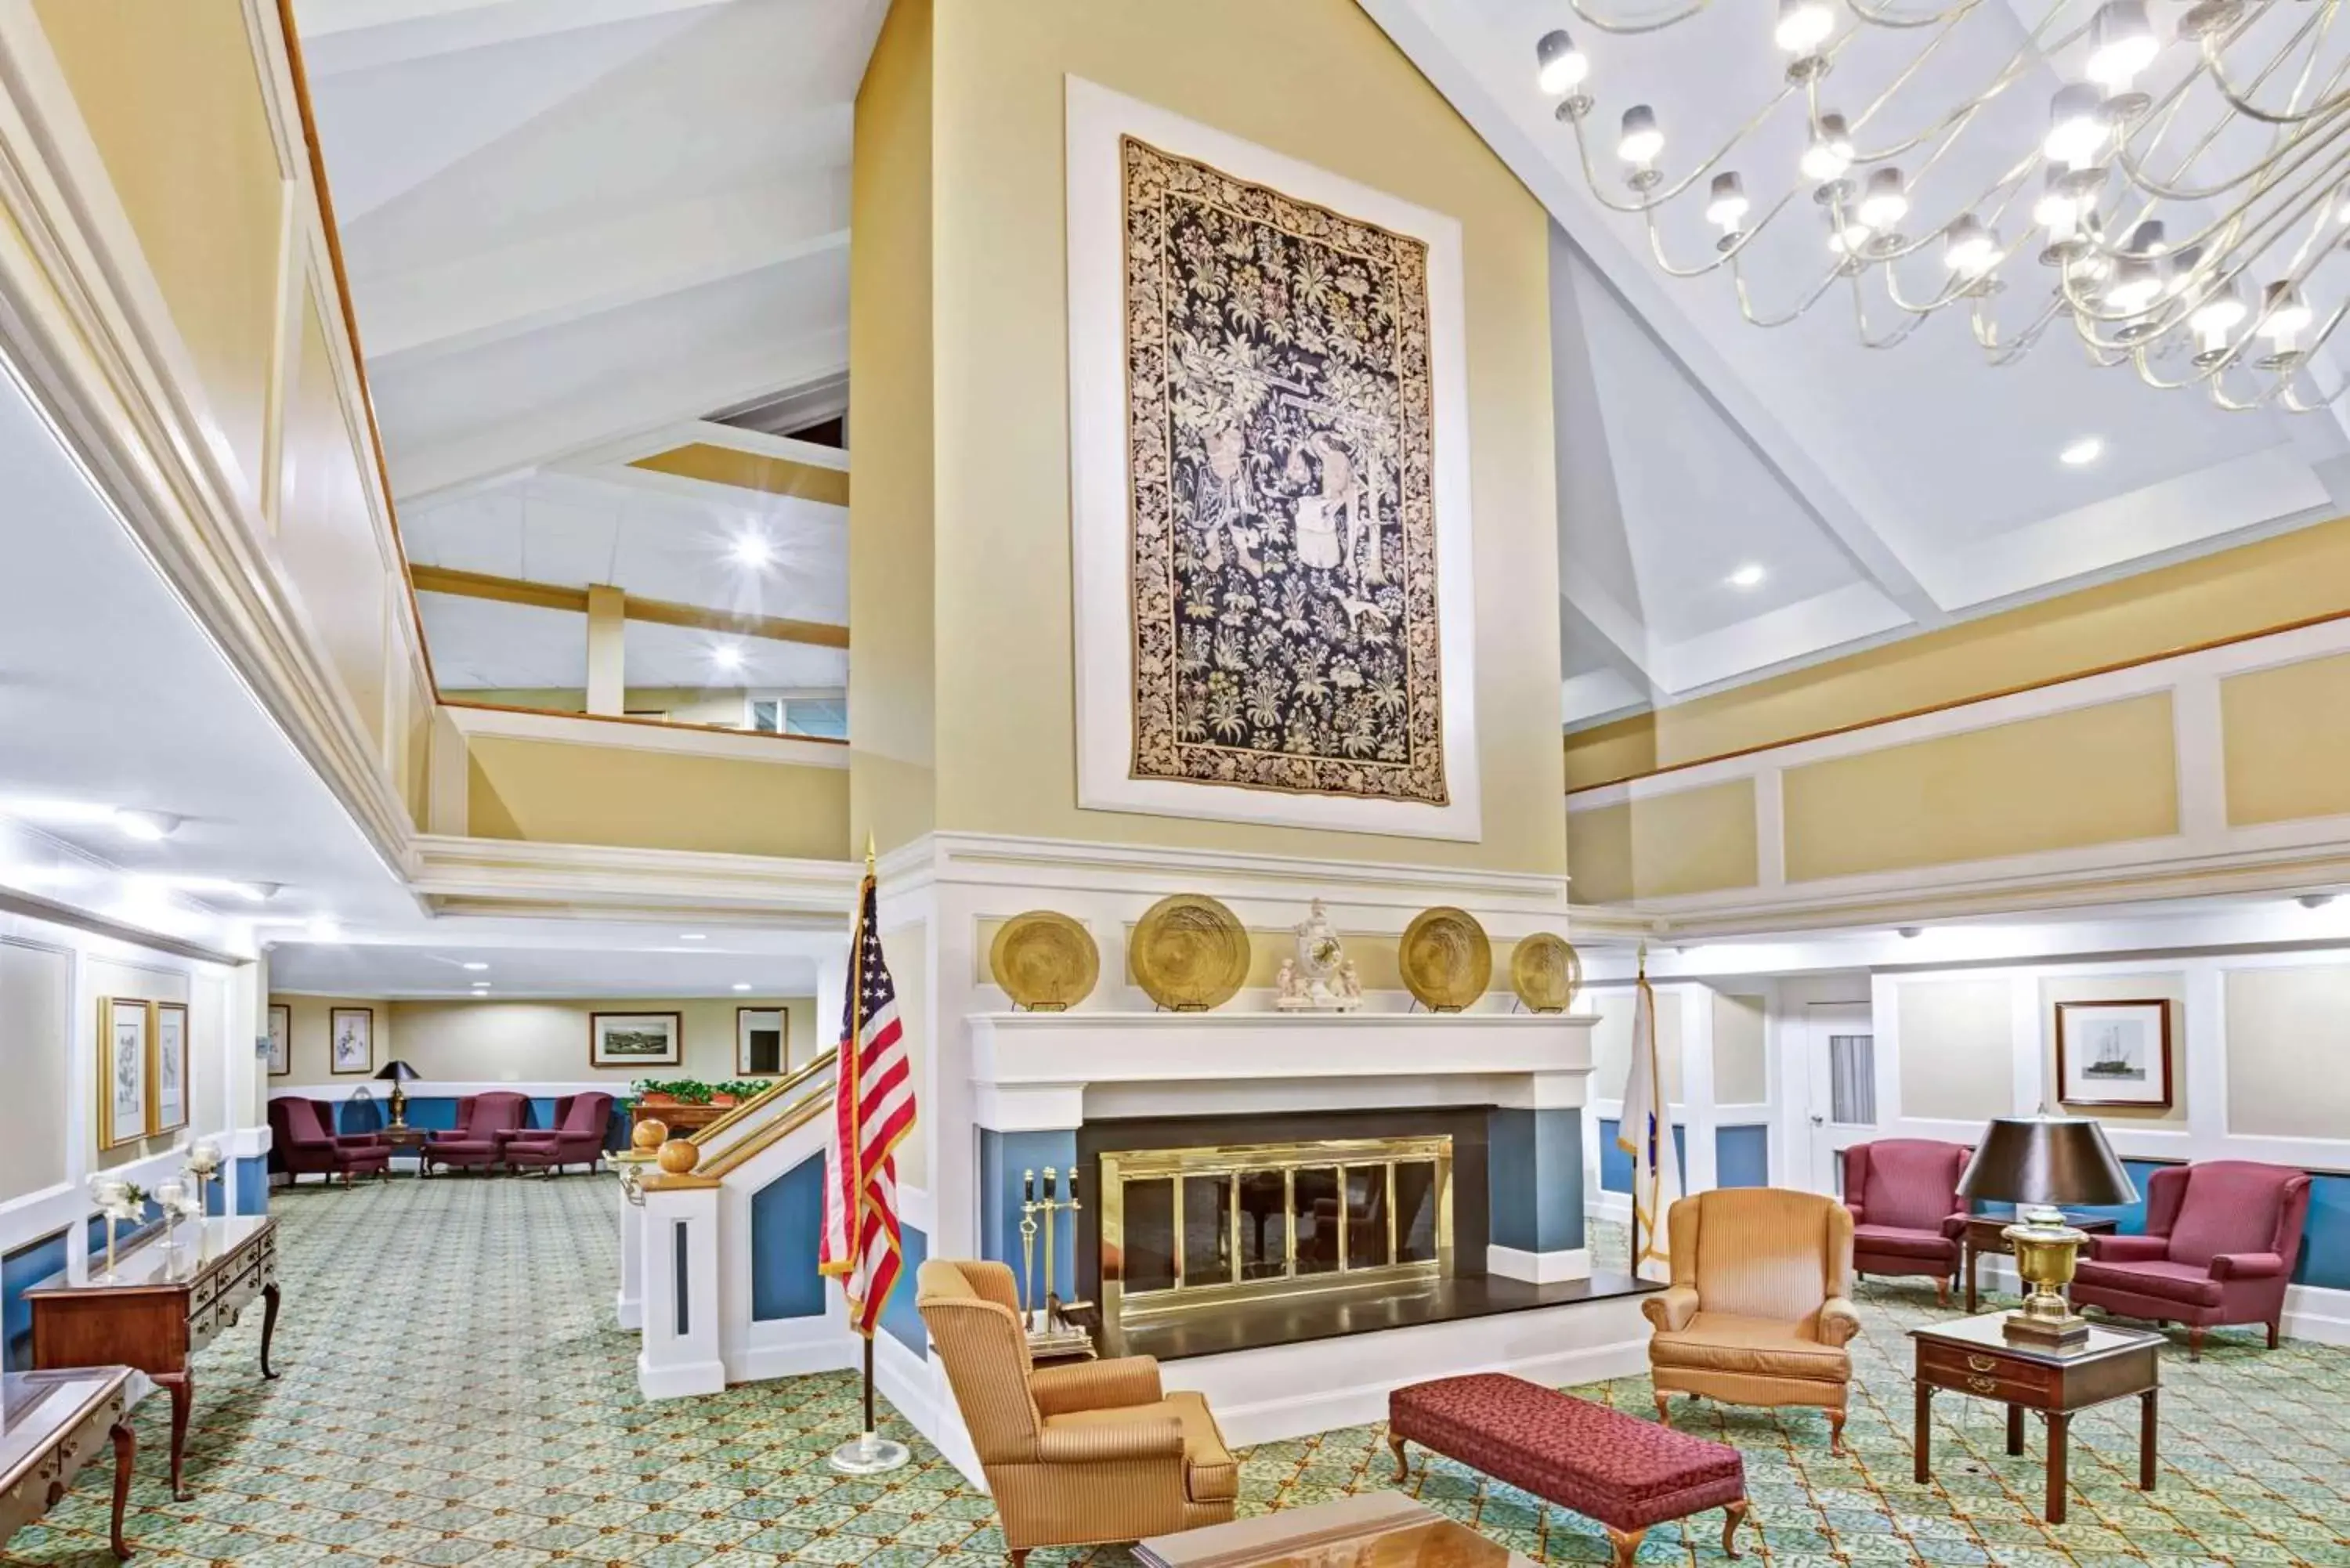 Lobby or reception, Lobby/Reception in Ramada by Wyndham Seekonk Providence Area